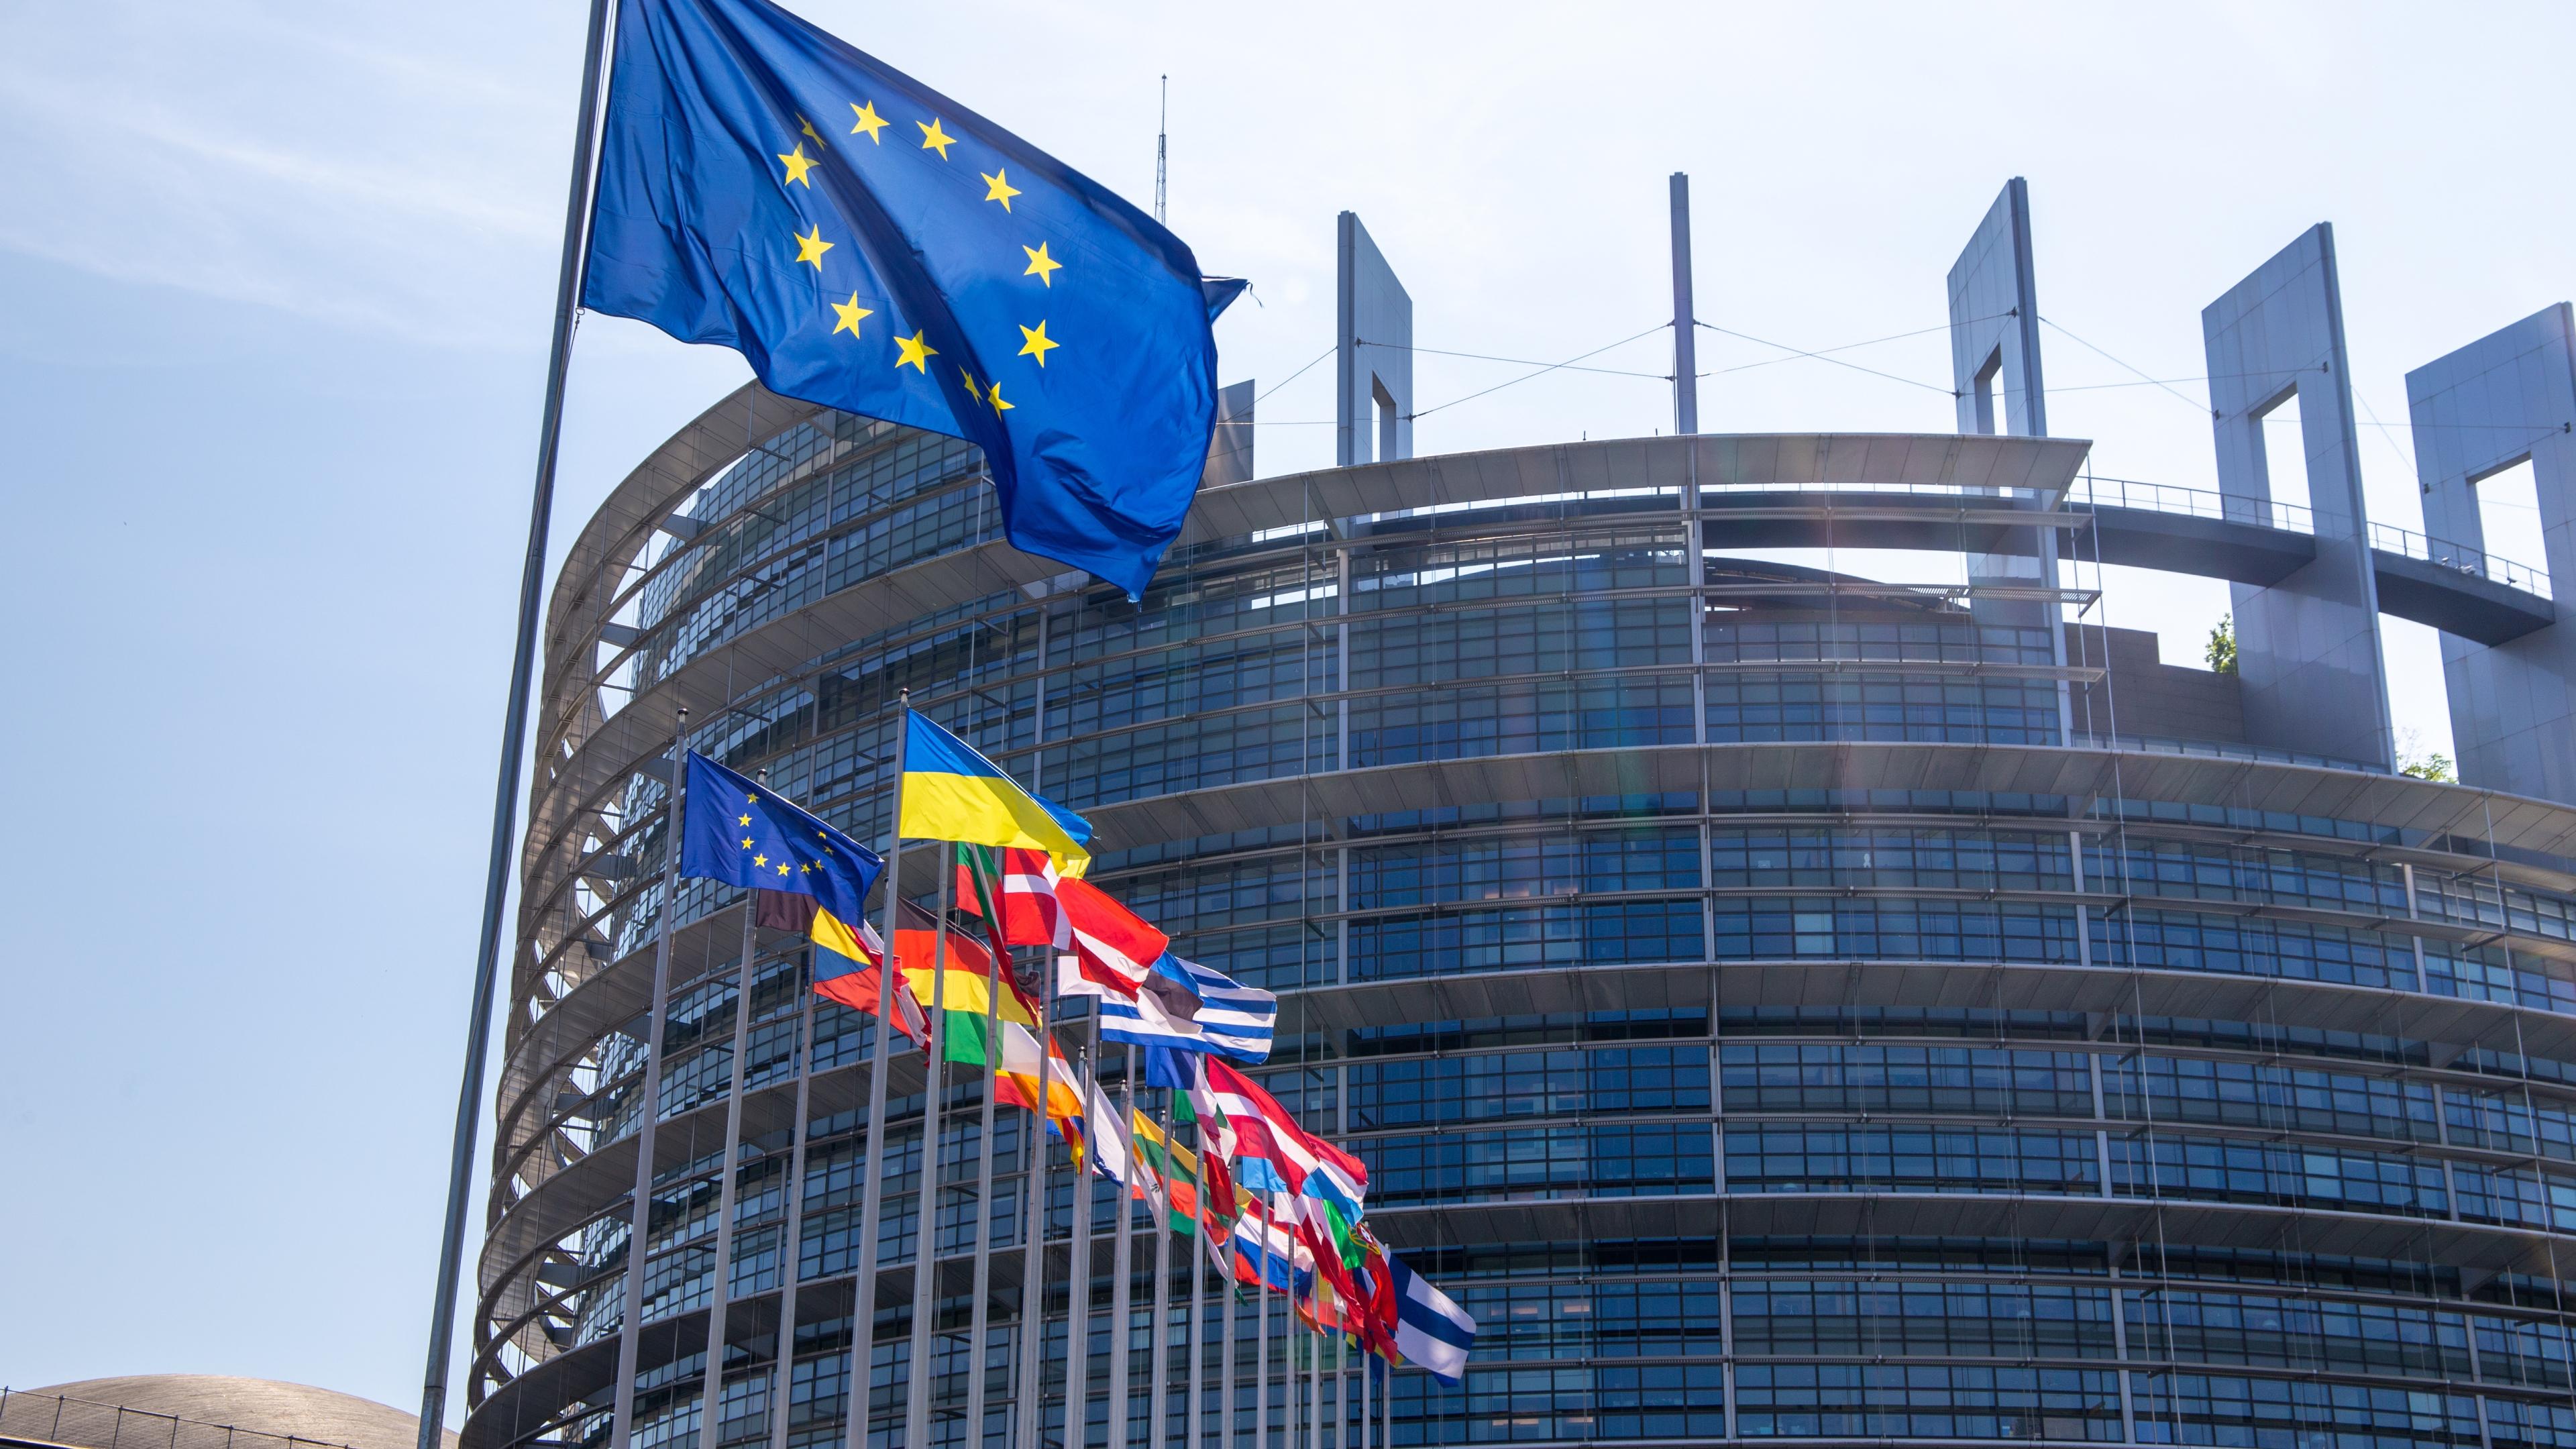 Das europäische Parlament bei Tageslicht und mit der europäischen Flagge im Vordergrund.